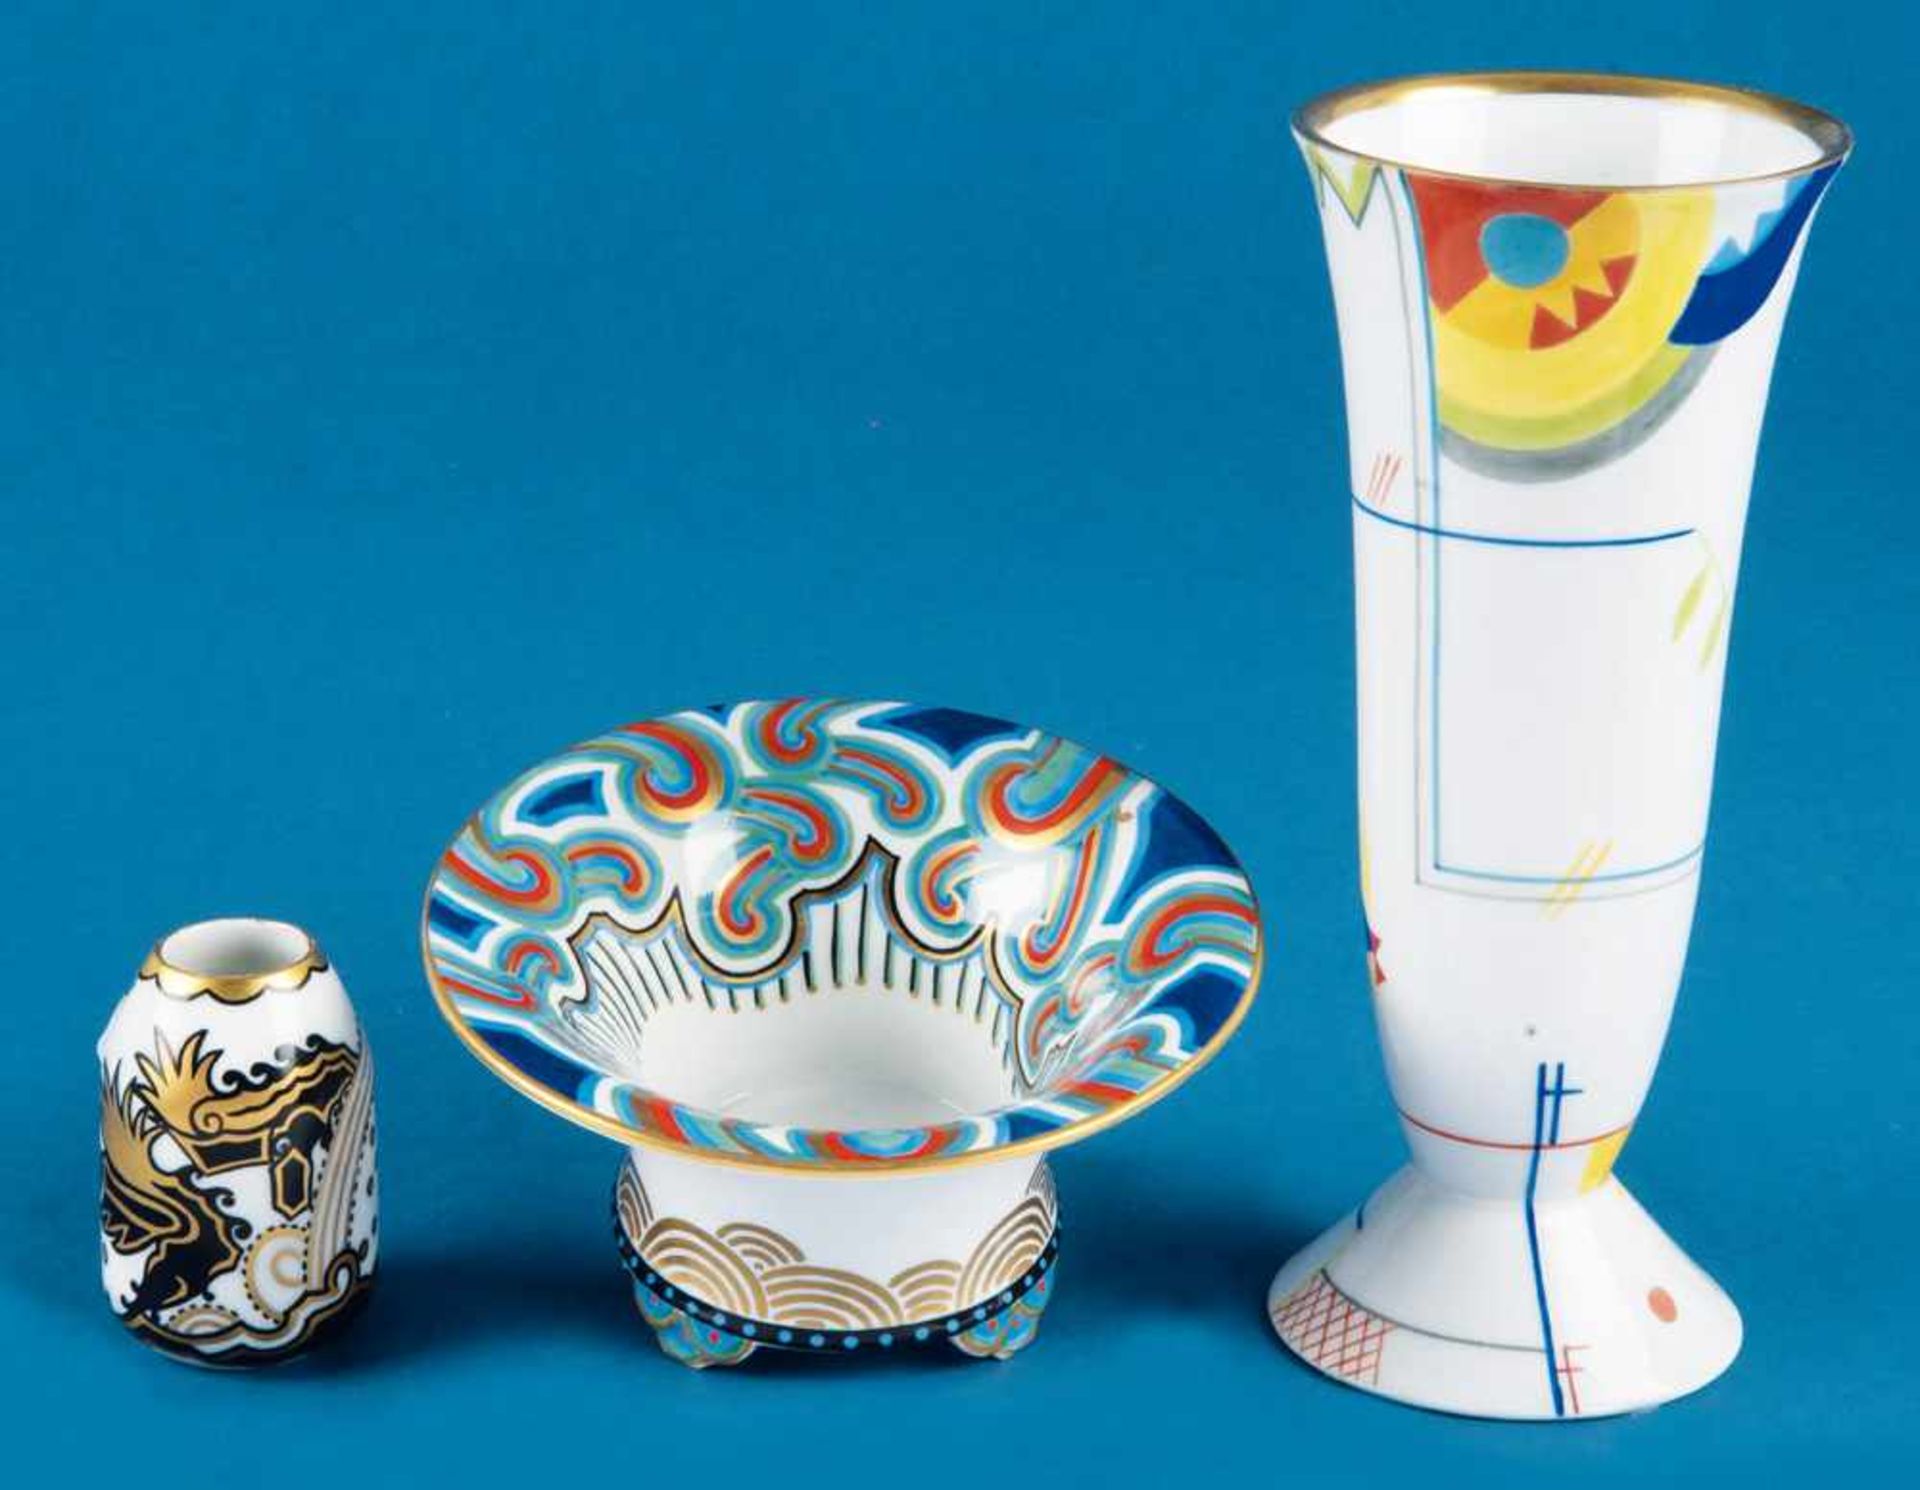 Drei unterschiedliche Vasen, u.a. Rosari. Rosenthal 1920. Porzellan, bunt bemalt. Modellnummer u.